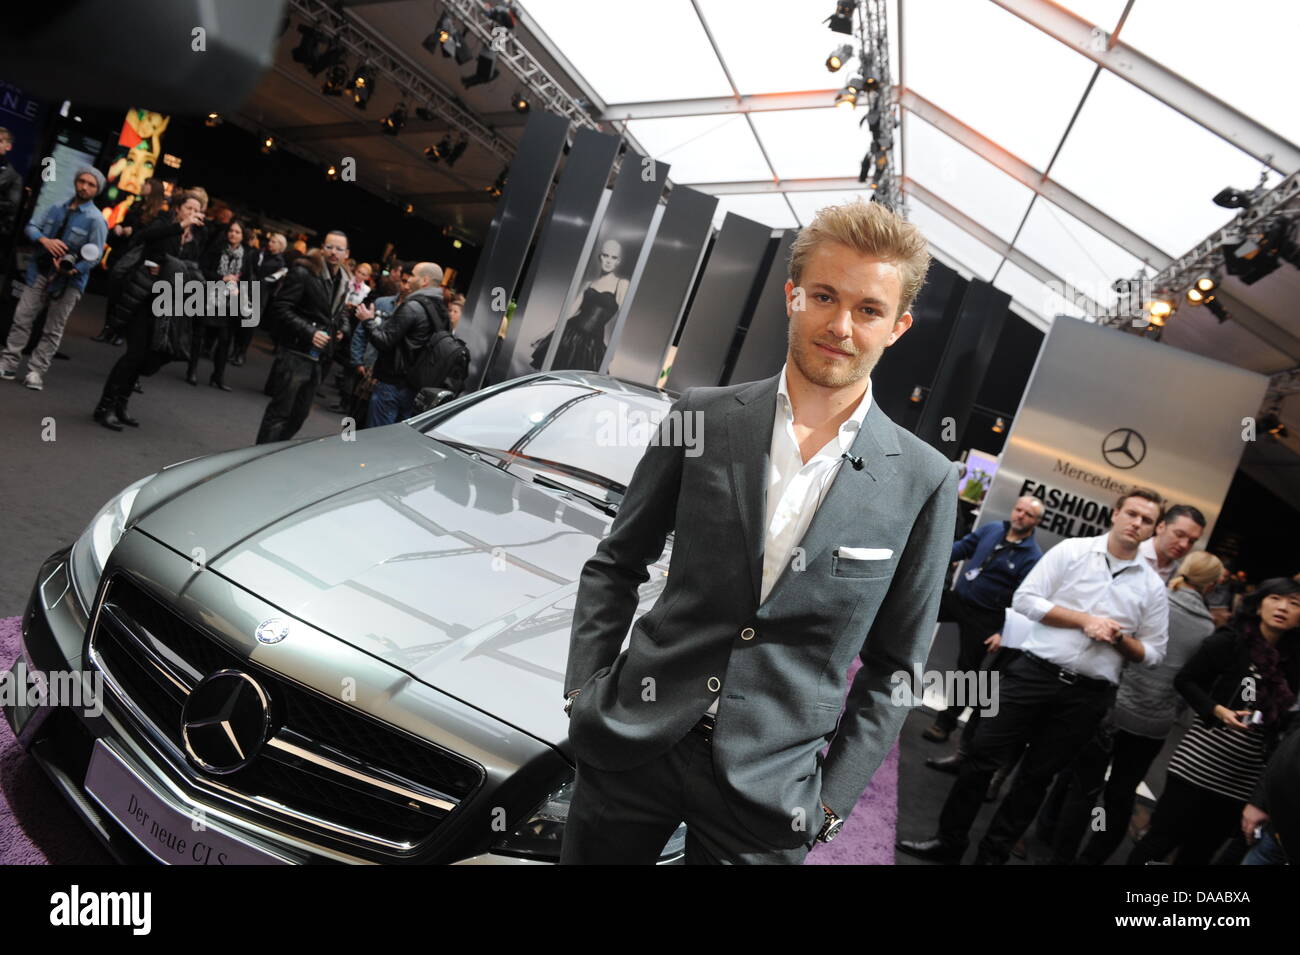 Driver di Formula Uno Nico Rossberg assiste le Dawid Tomaszewski fashion show durante la Mercedes-Benz della settimana della moda a Berlino, Germania, 20 gennaio 2011. Foto: Joerg Carstensen Foto Stock